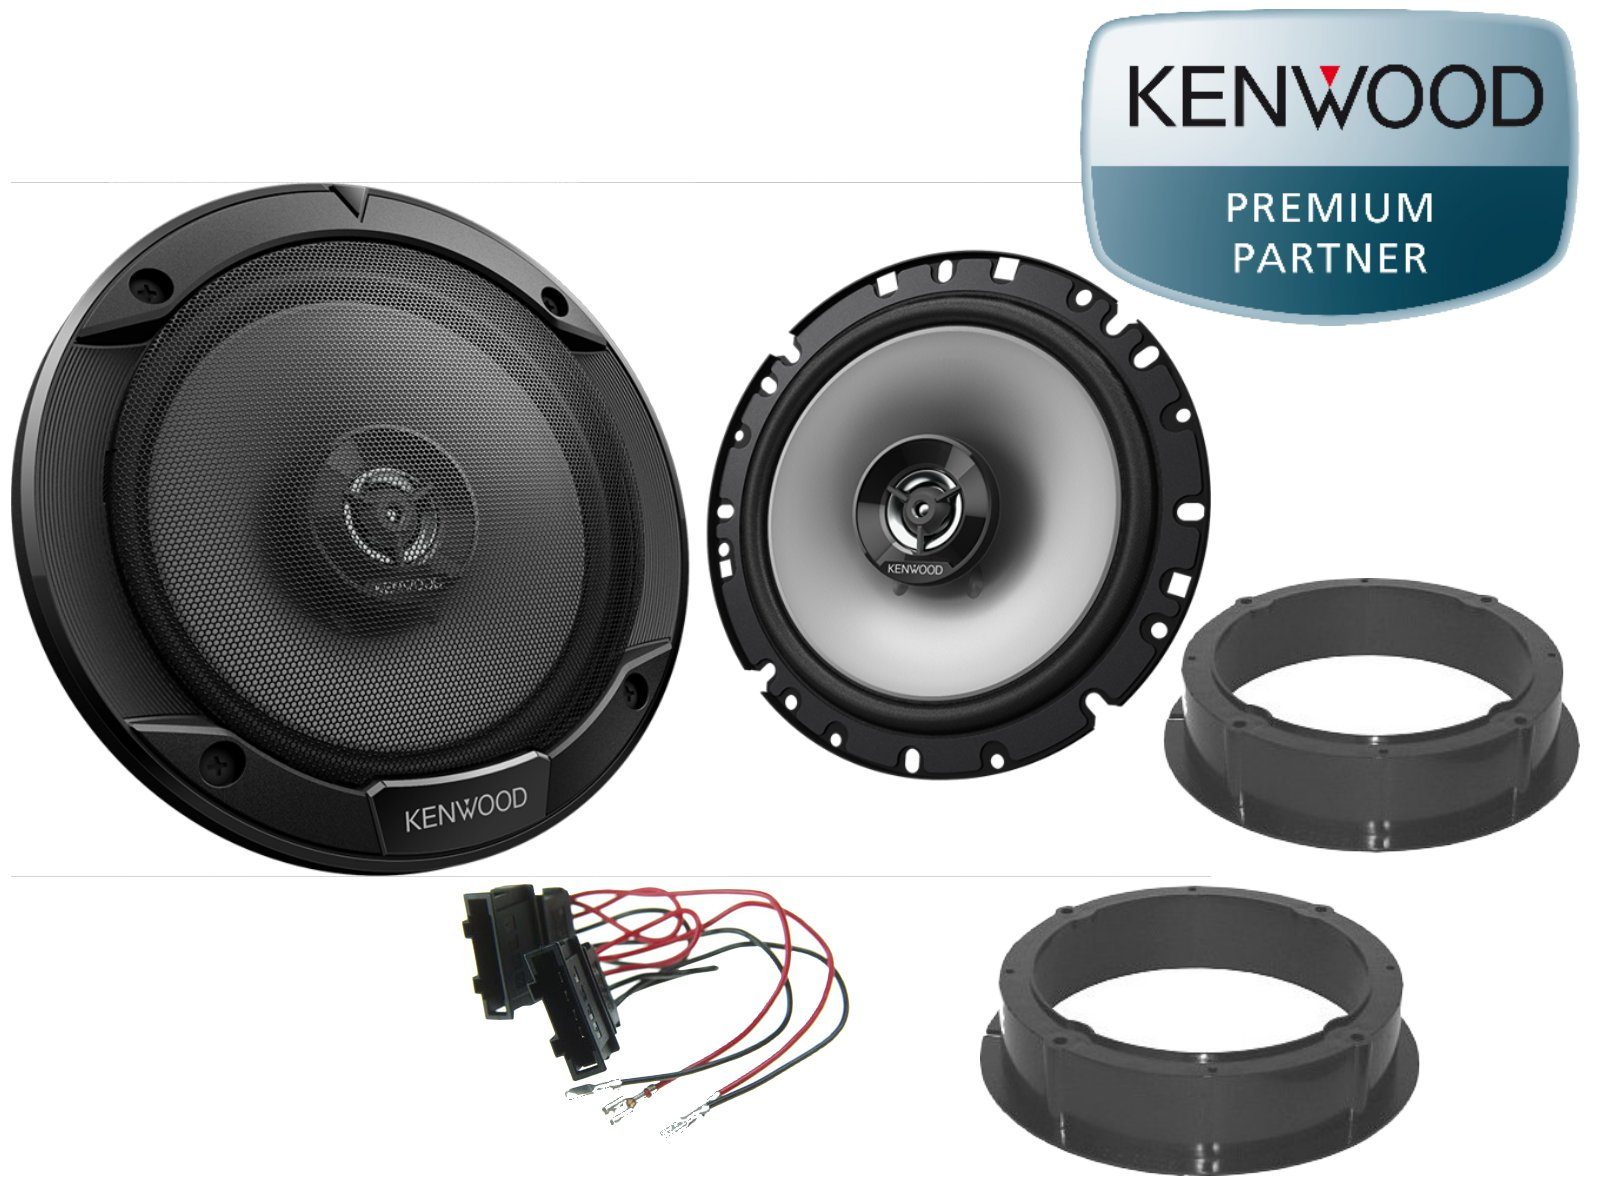 DSX Kenwood passend für Skoda Bj Citygo Auto-Lautsprecher Lautspr W) 15-20 (30